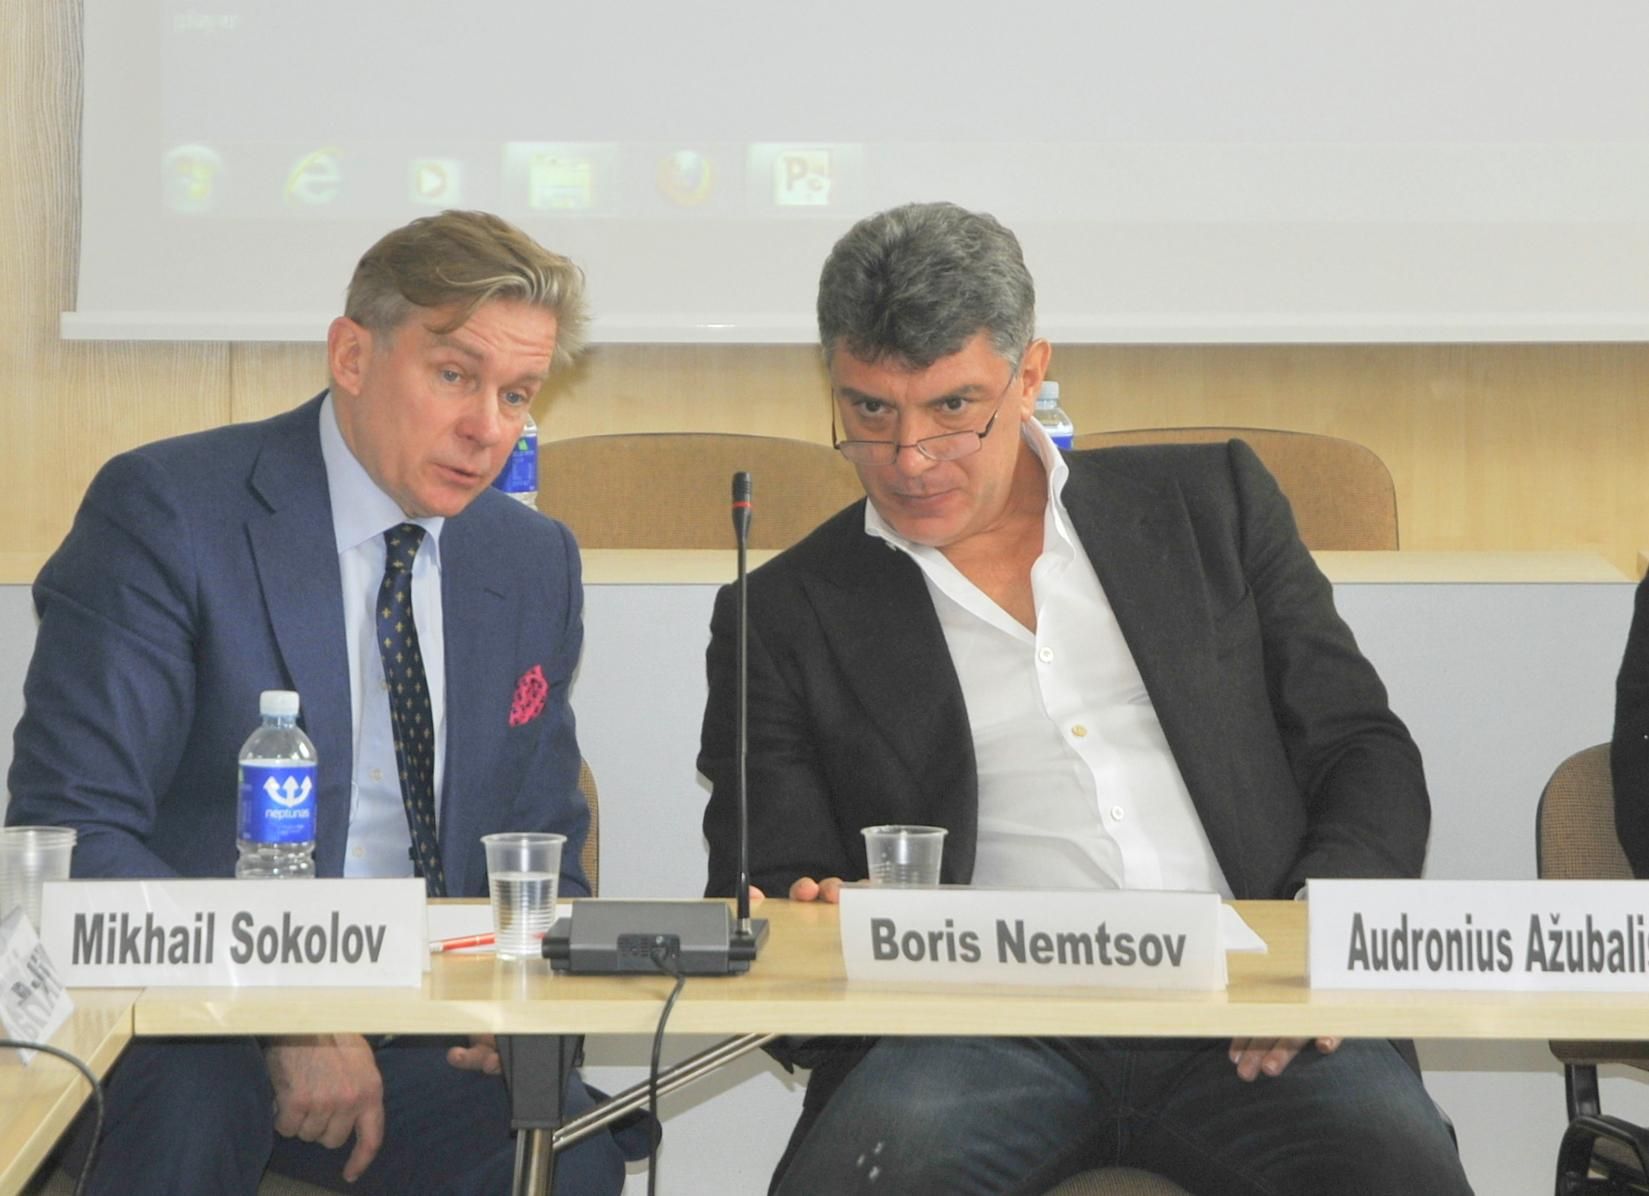 Аудронюс Ажубалис (слева) и Борис Немцов, похоже, прекрасно понимают друг друга. Фото Владимира Клоповского, "Обзор"